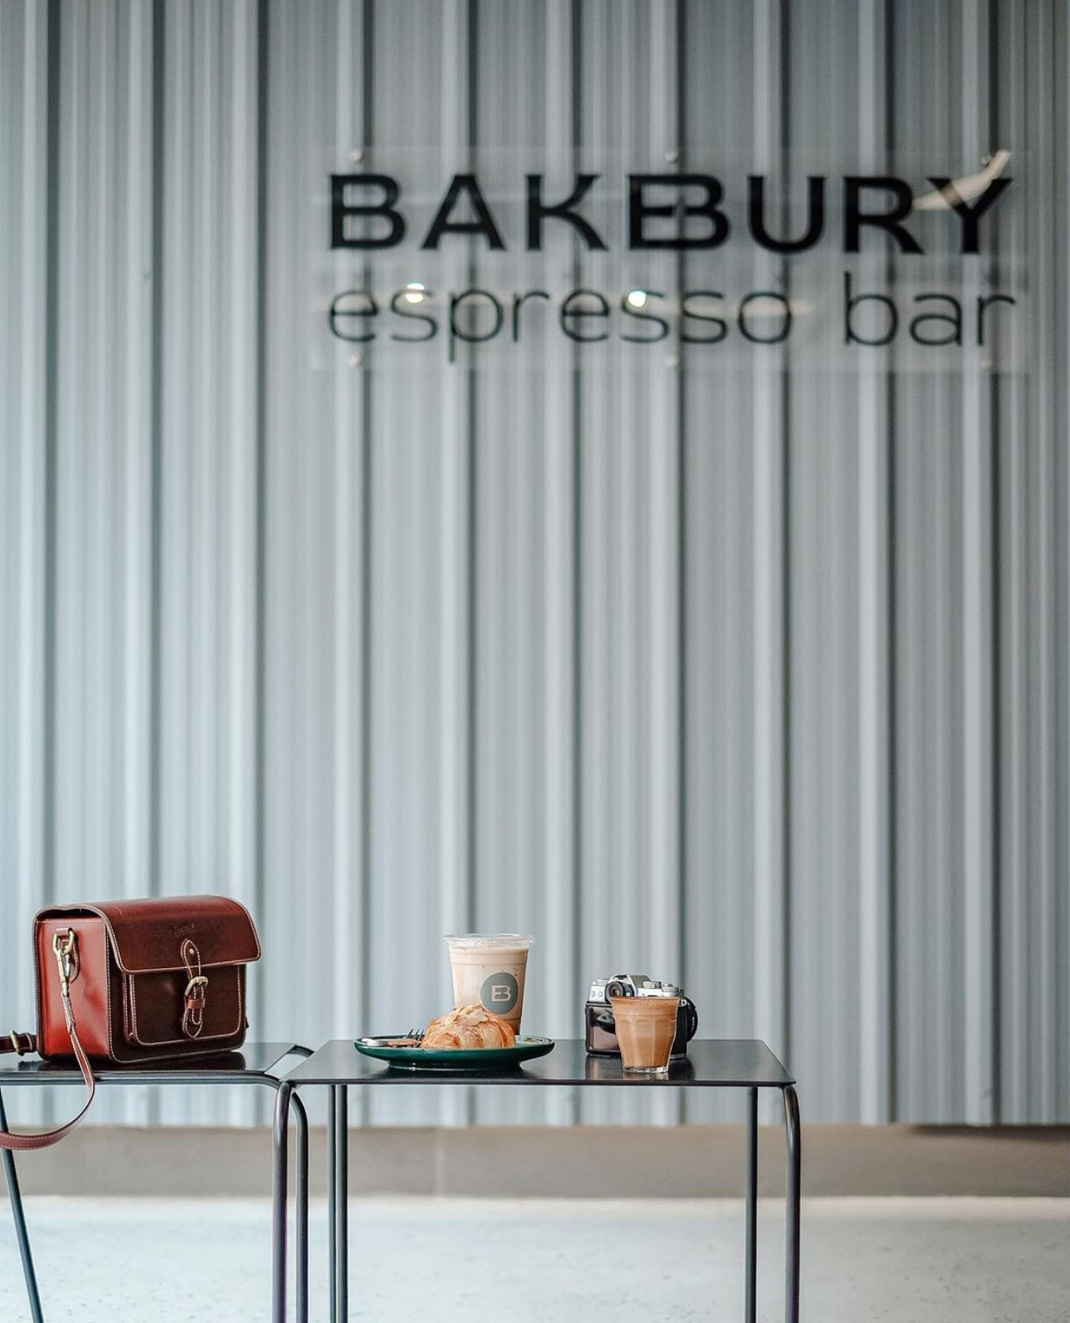 面包店BAKEBURY Espresso Bar 泰国 面包店 马赛克 logo设计 vi设计 空间设计